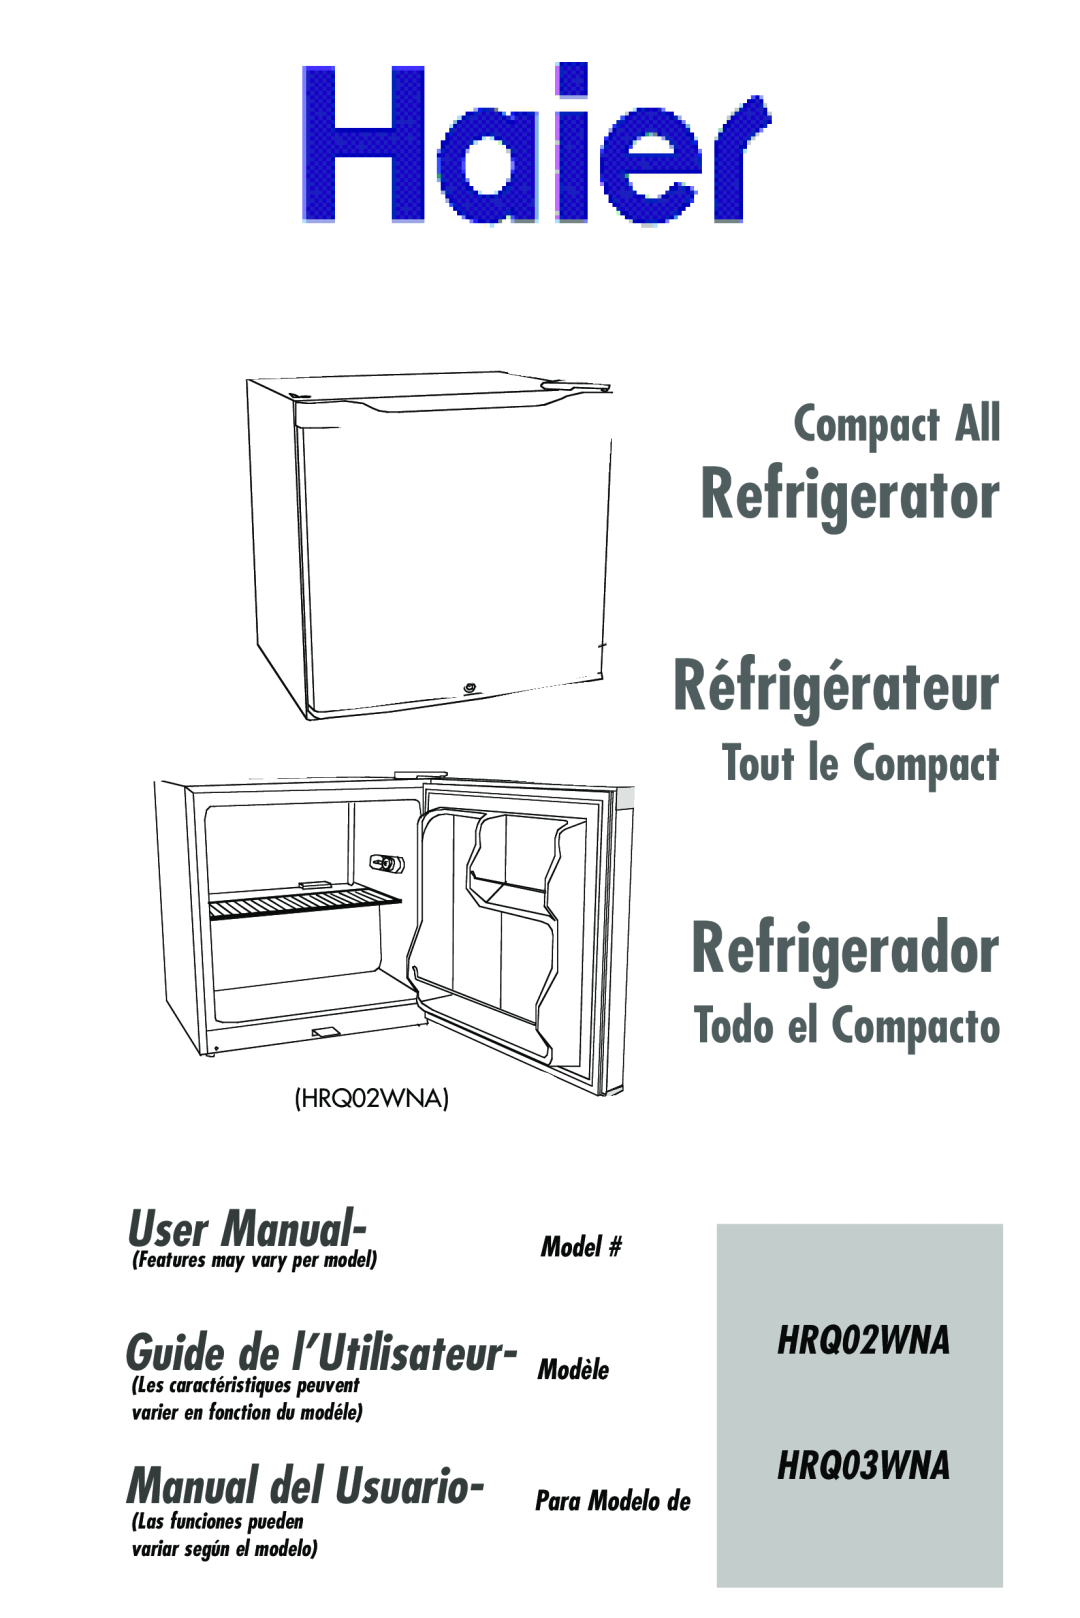 Haier HRQ02WNA user manual Model #, Modèle, Refrigerator Réfrigérateur, Refrigerador, Compact All, Tout le Compact 